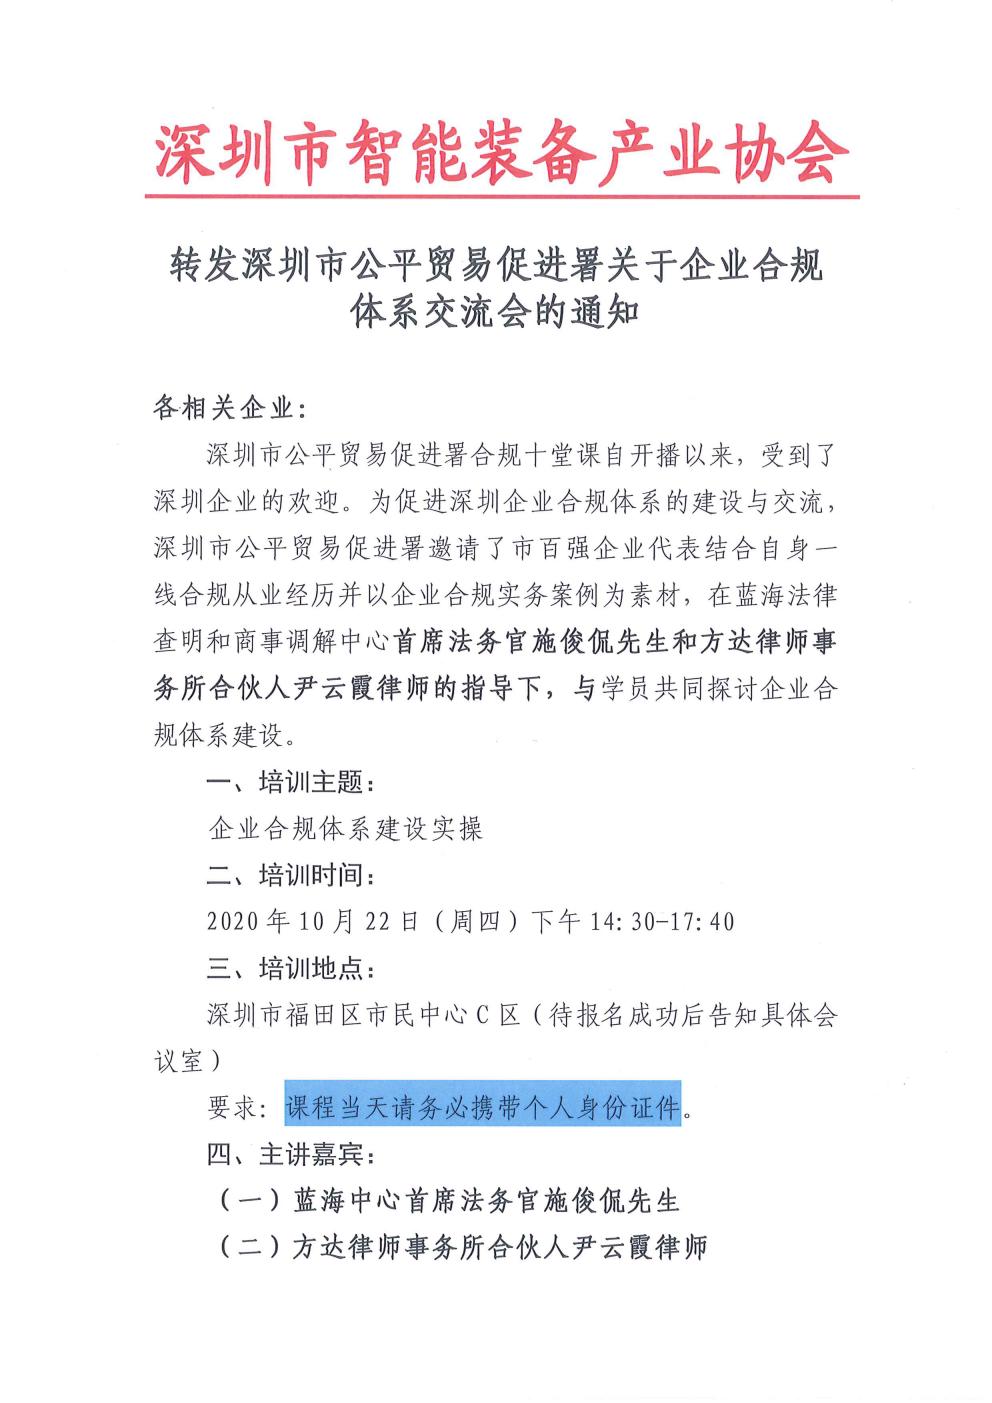 转发深圳市公平贸易促进署关于企业合规体系交流会的通知